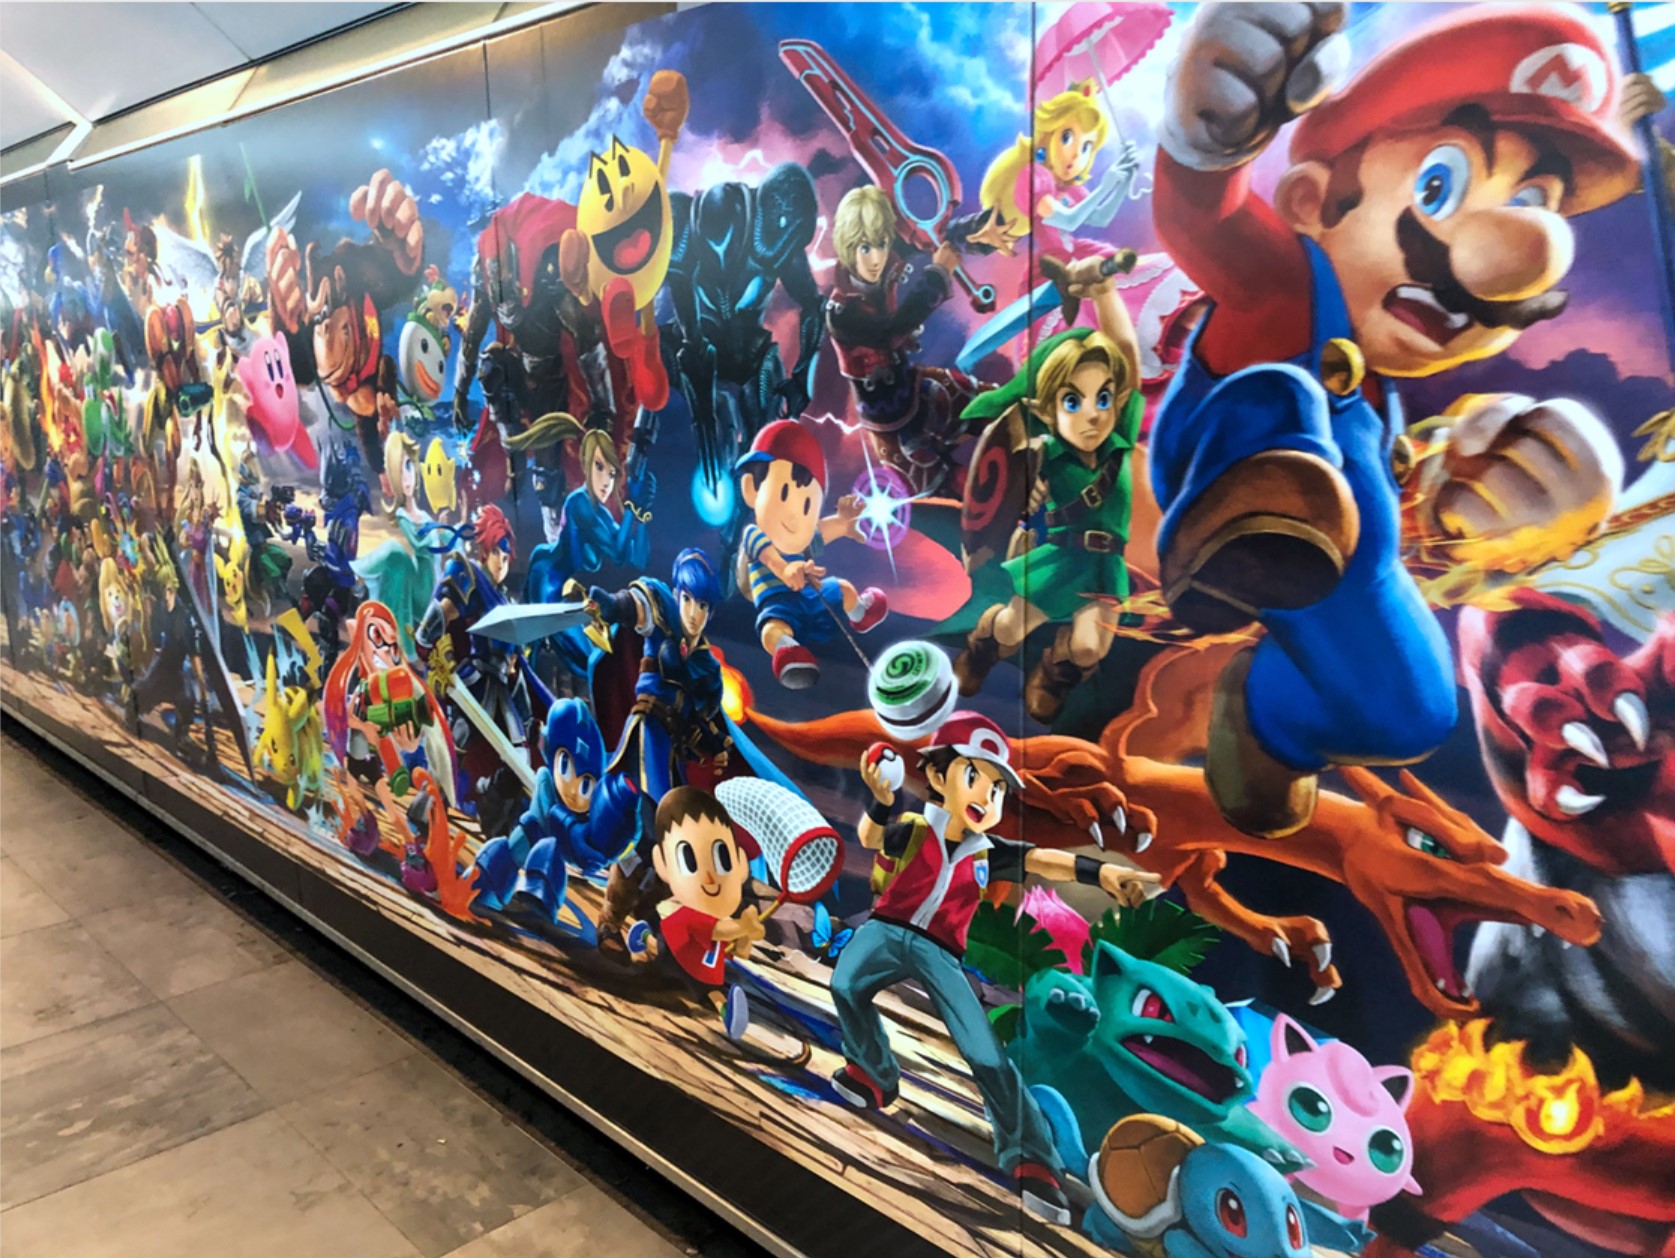 《任天堂明星大亂鬥特別版》即將發售 巴黎地鐵站貼滿宣傳海報